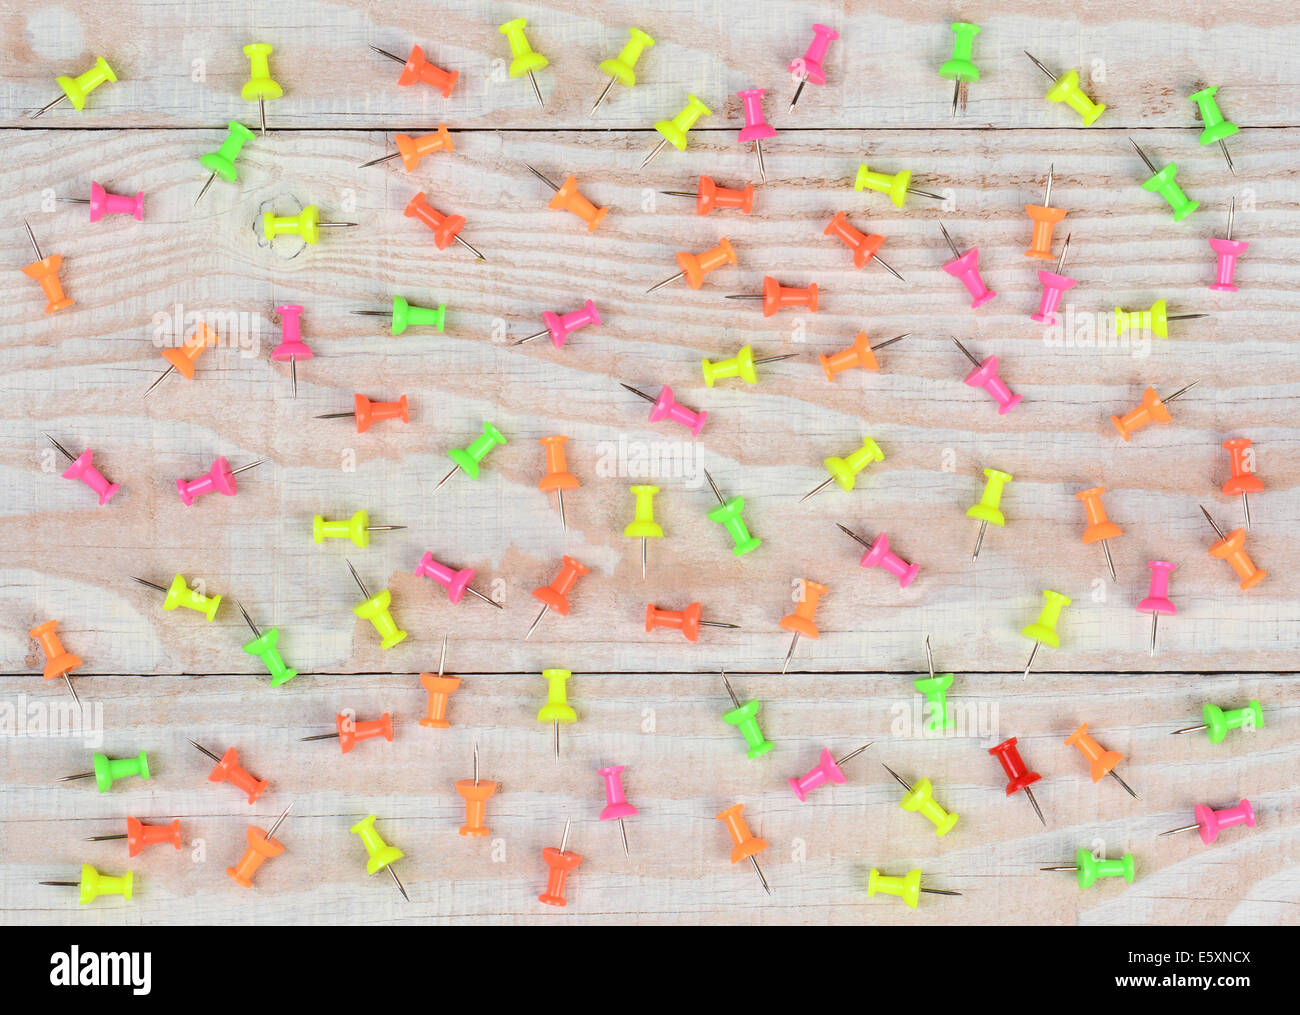 Eine zufällige Anordnung von multi-rosafarbig-Push-Pins auf einem rustikalen Holztisch weiß getünchten. Hohen Winkel im Querformat gedreht. Stockfoto